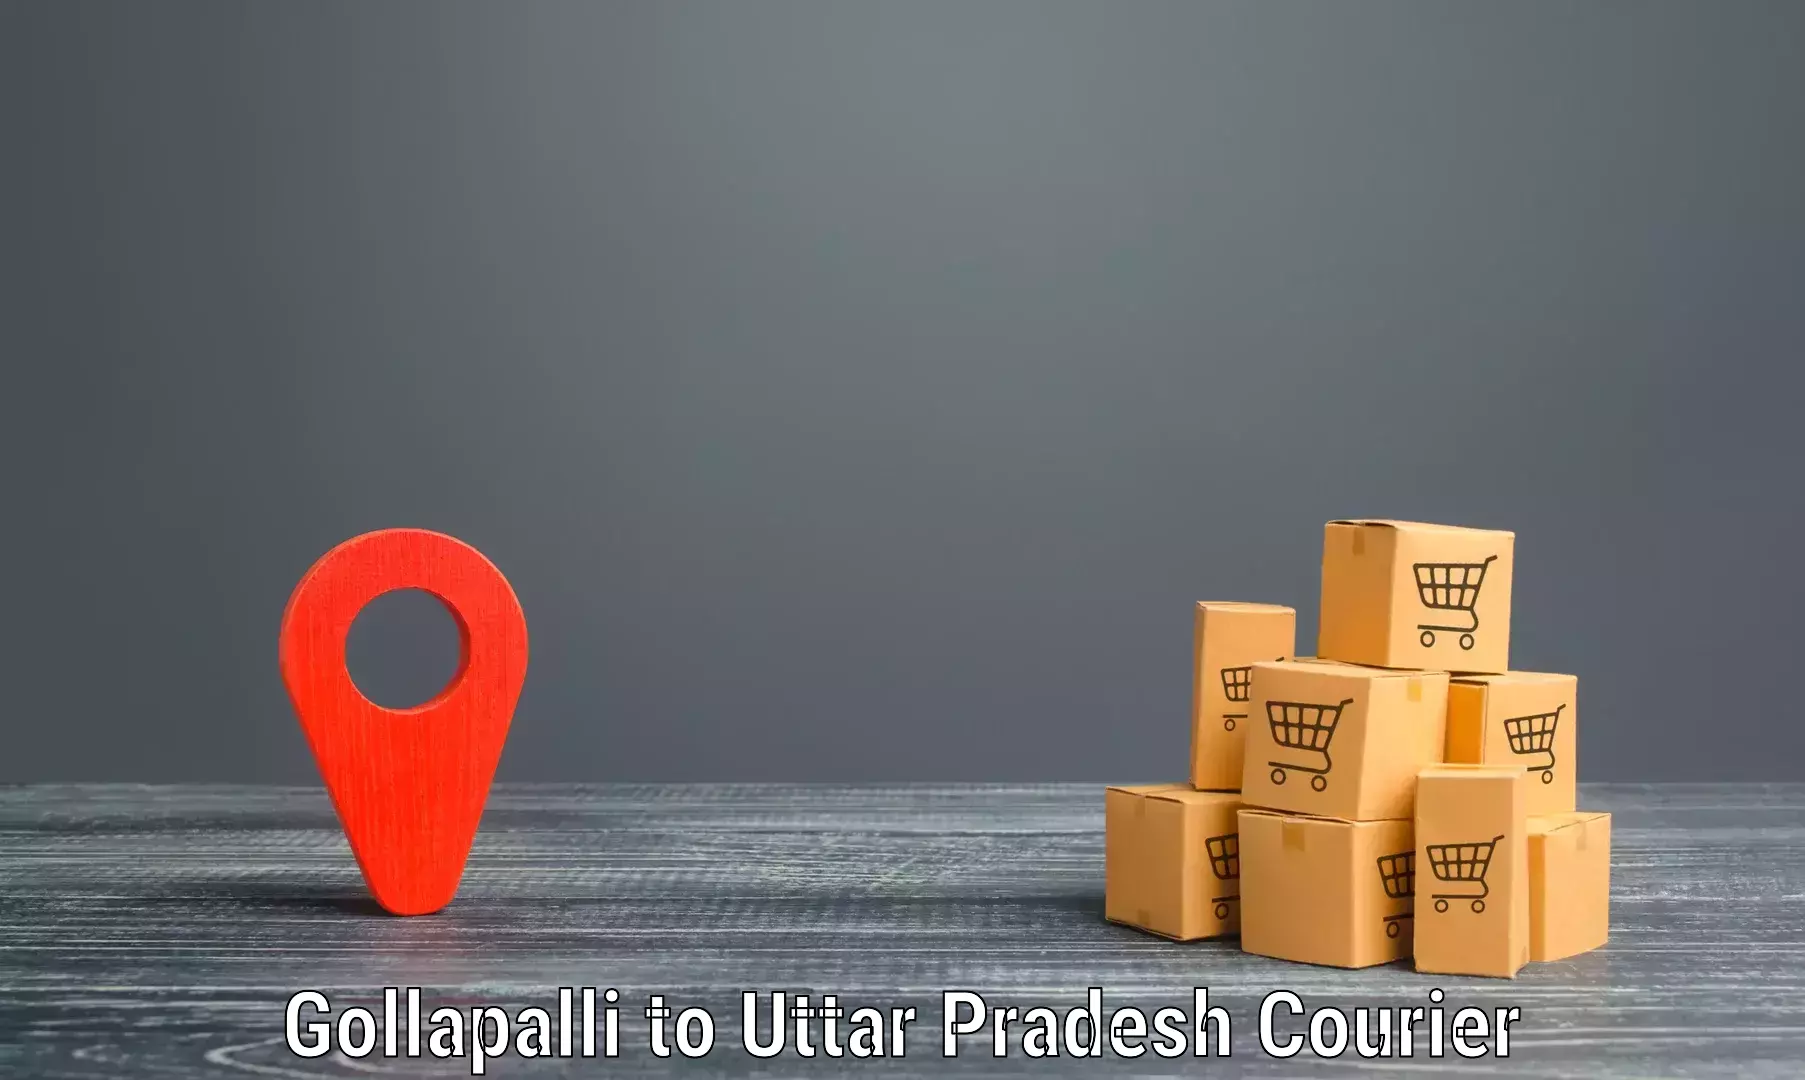 Sustainable shipping practices Gollapalli to Nizamabad Azamgarh